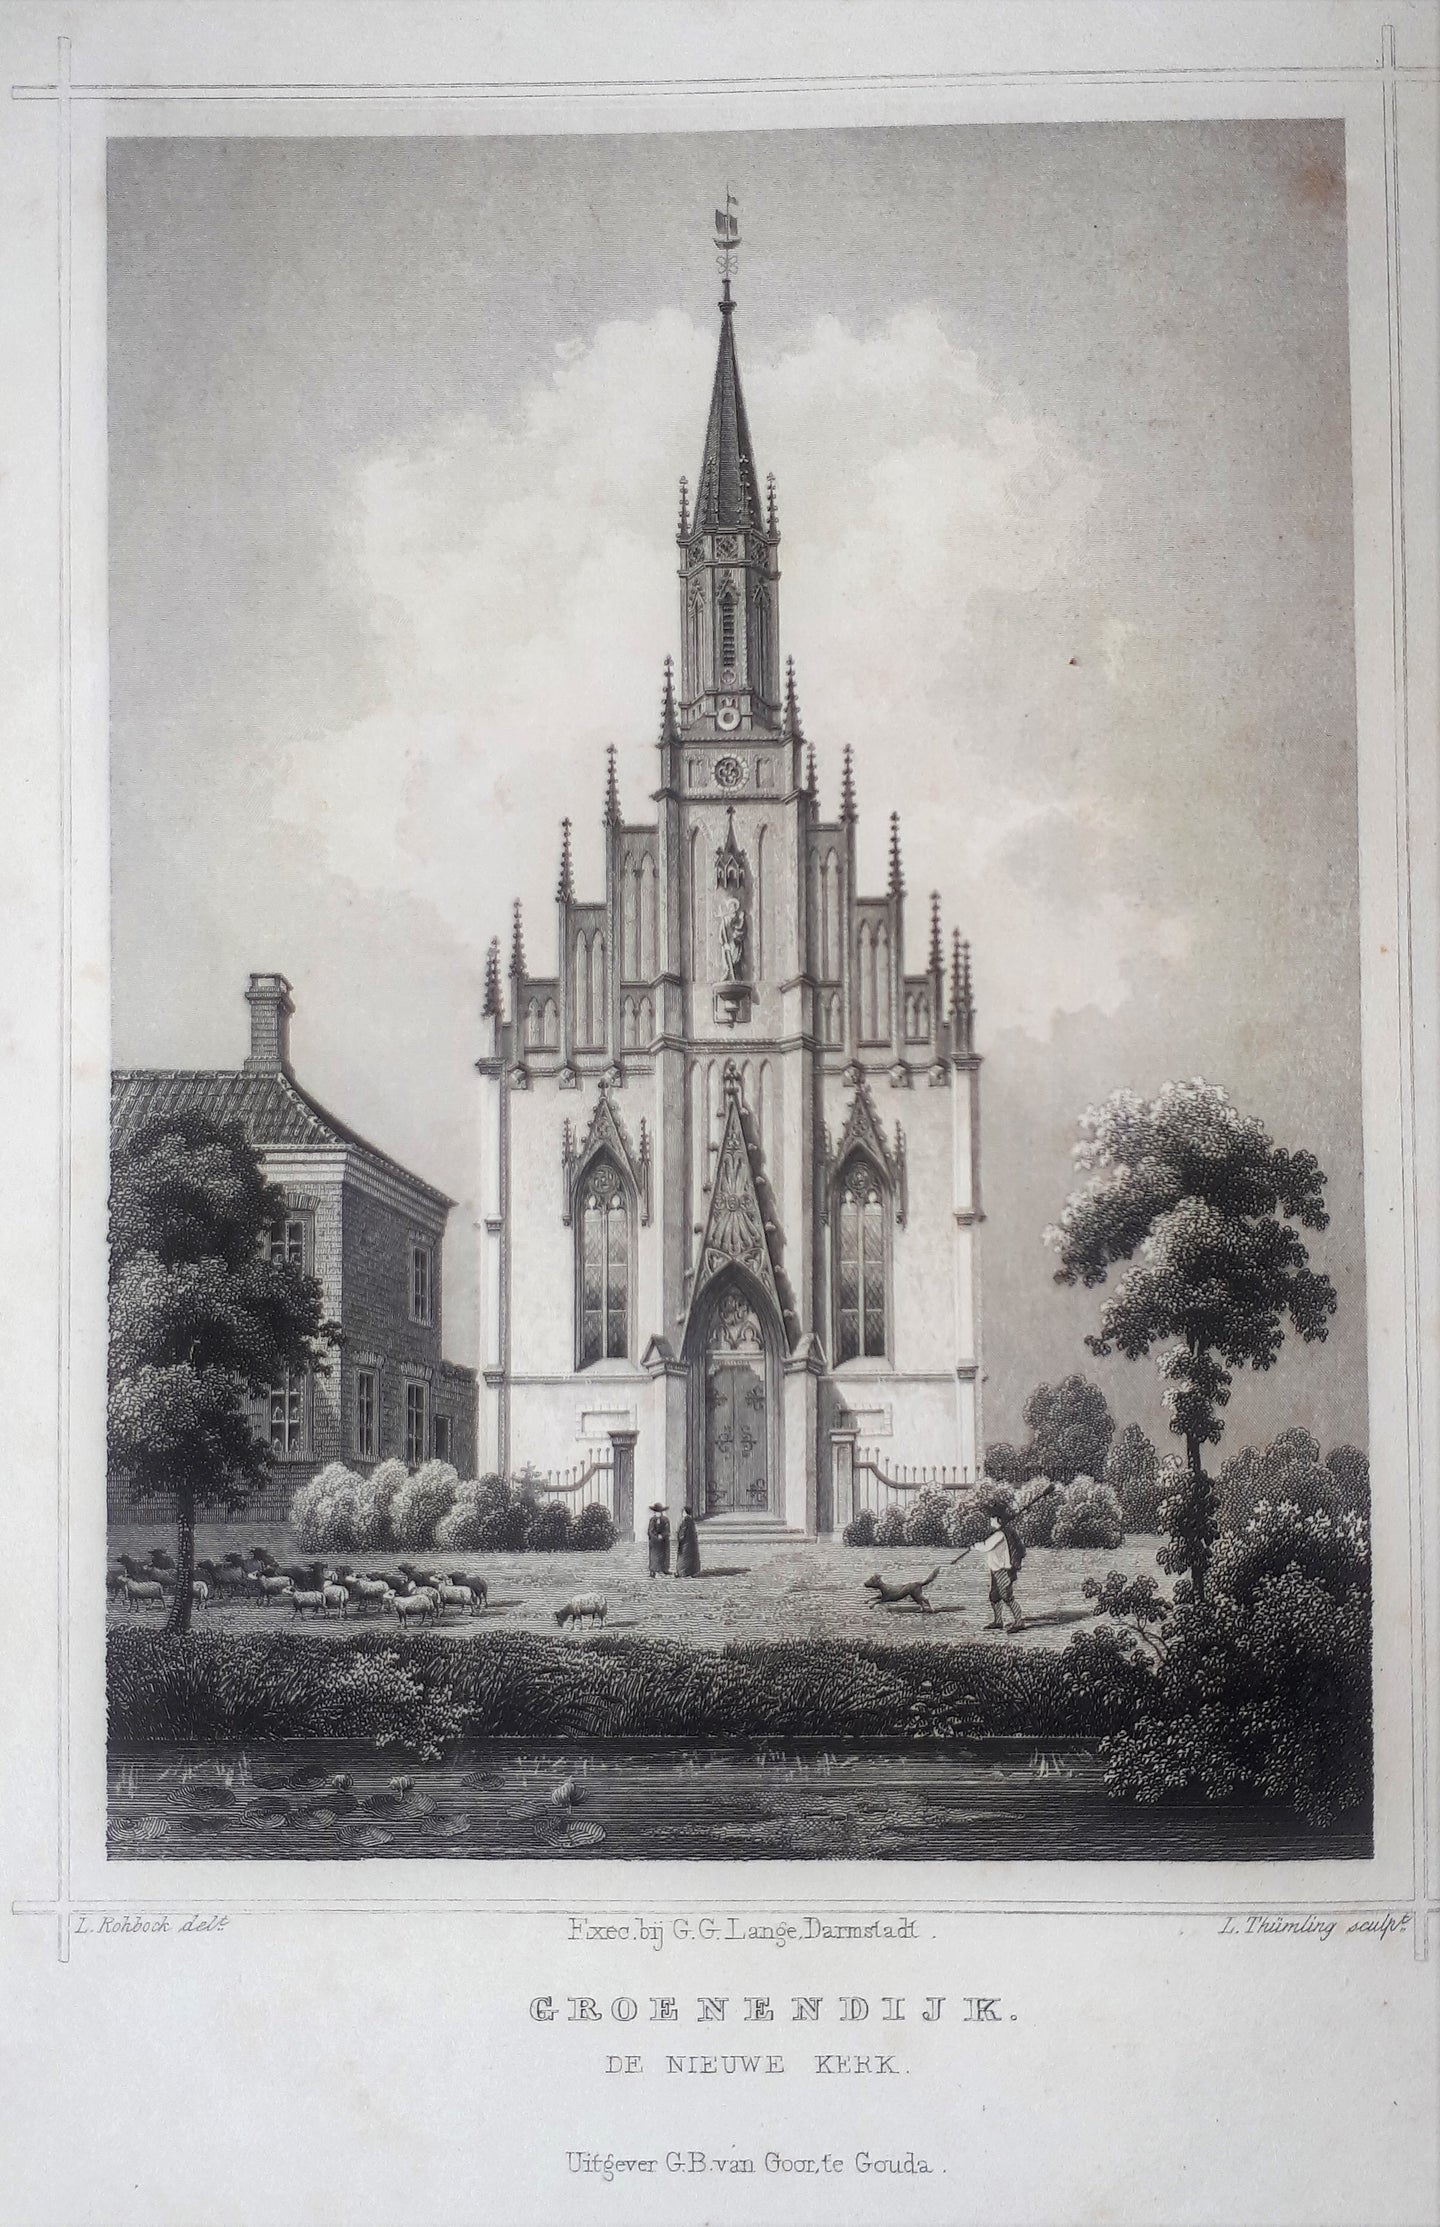 Groenendijk De Nieuwe Kerk - JL Terwen / GB van Goor - 1858